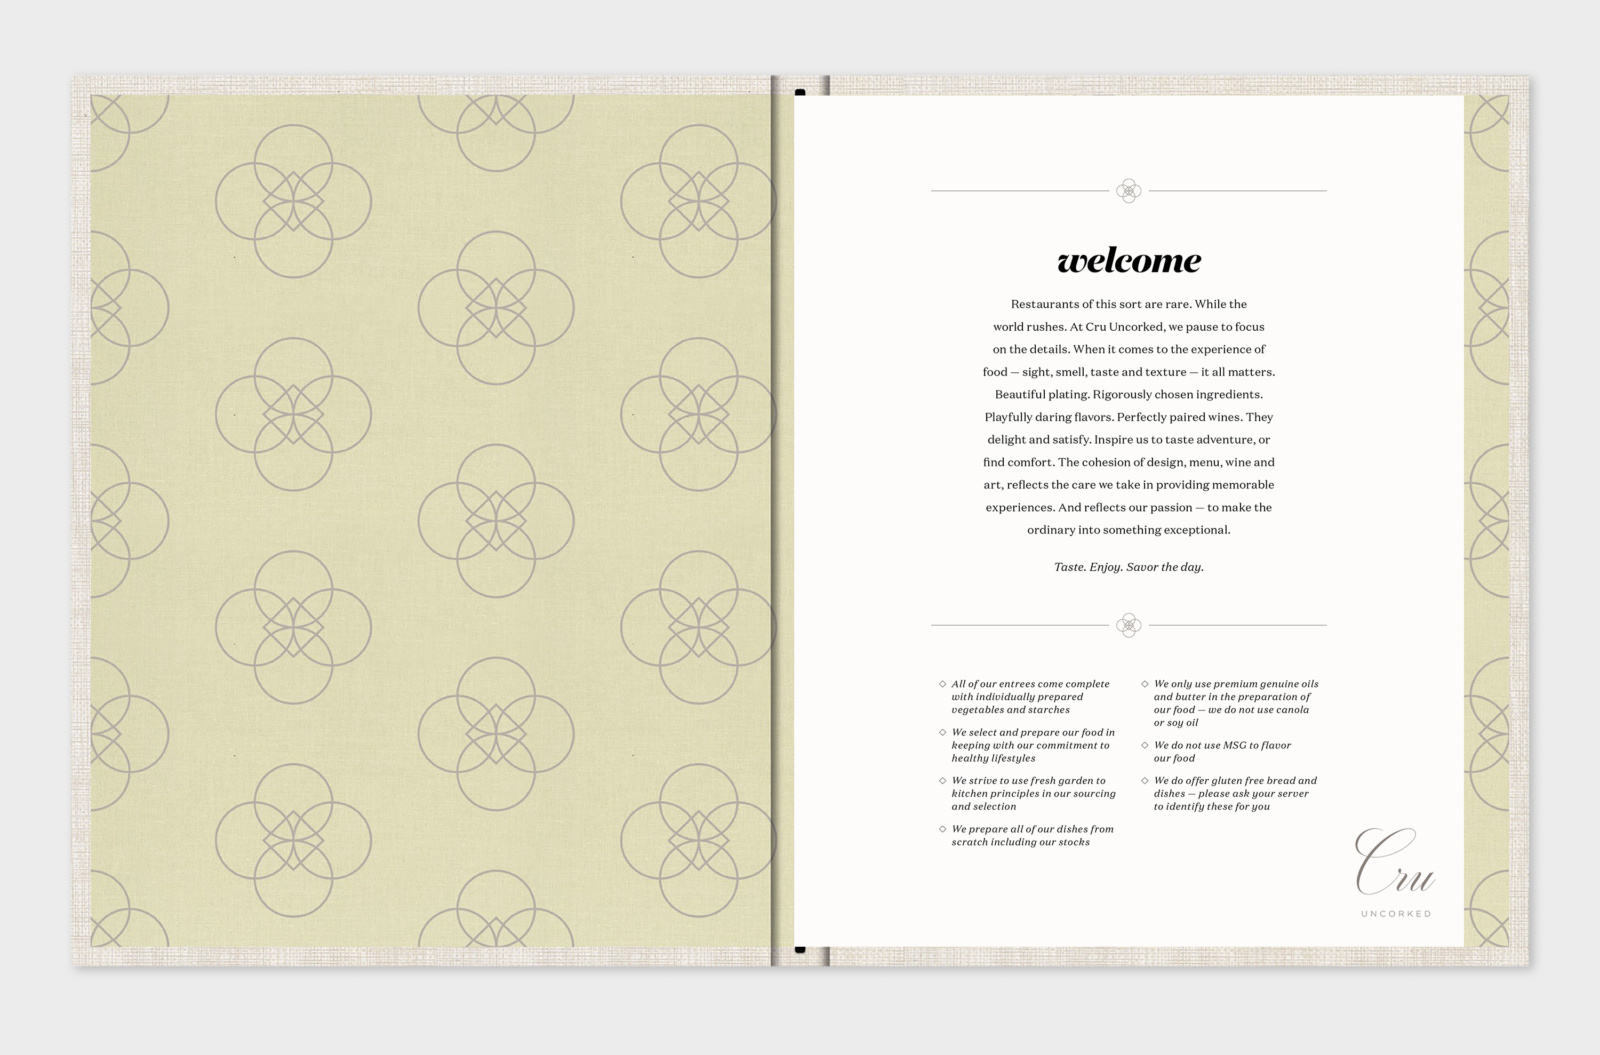 Cru Uncorked menu print design spread